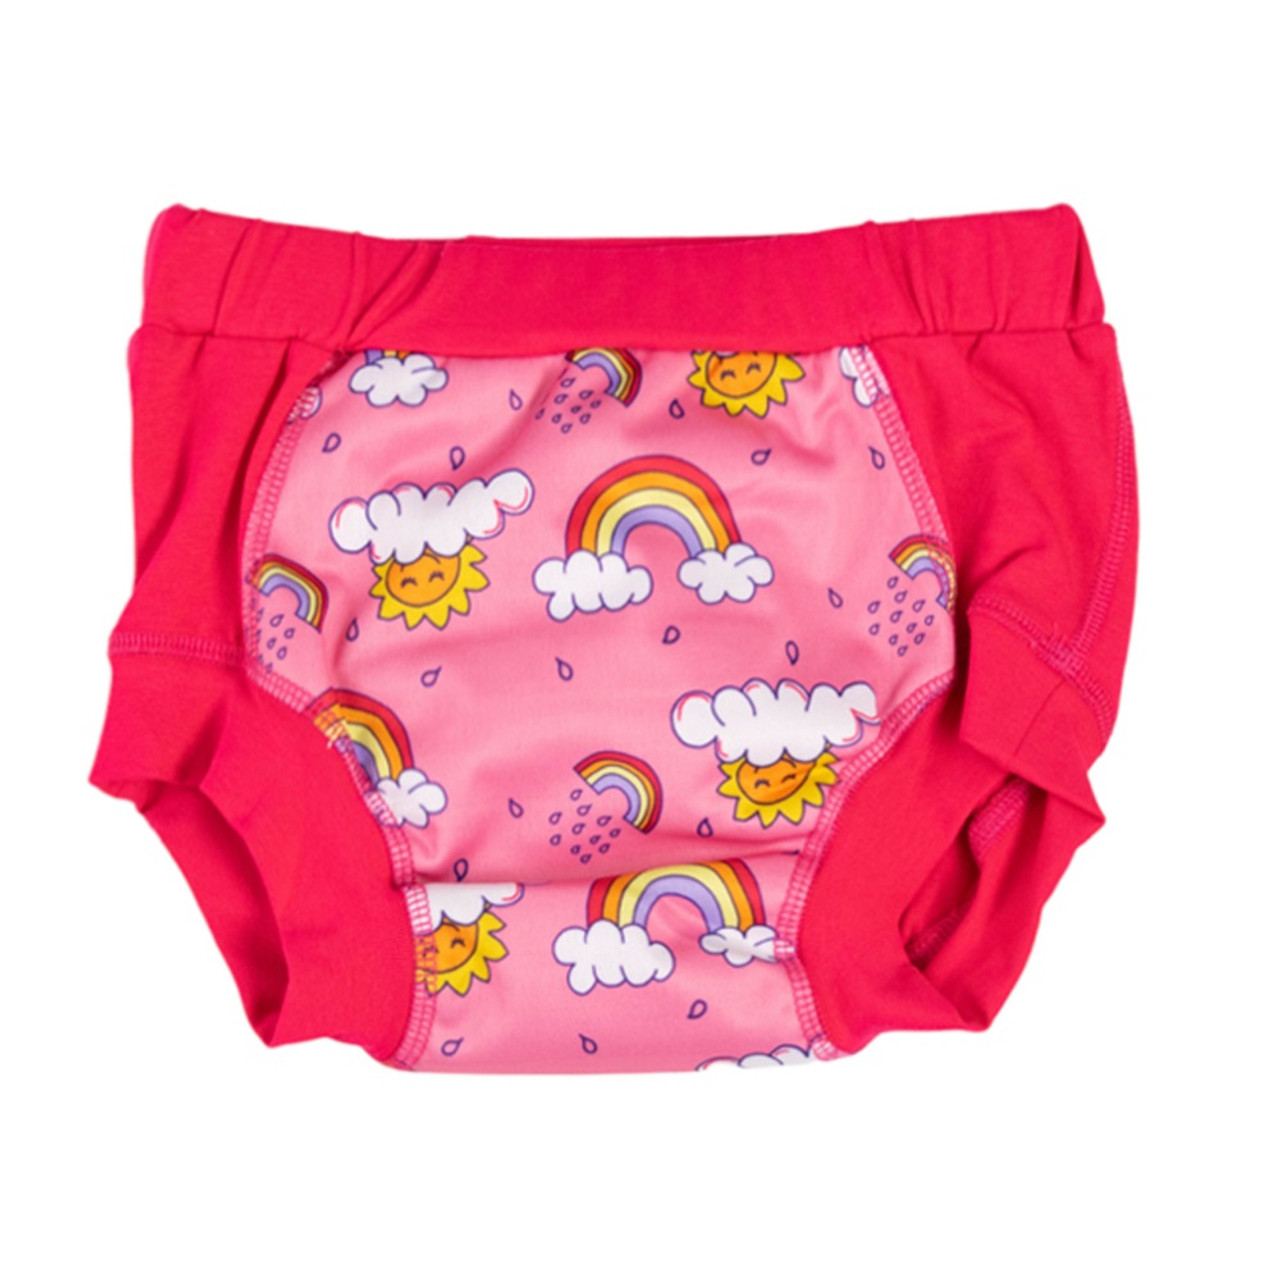 Wee Pants Training Undies - Rainbows (Pink), Nestling